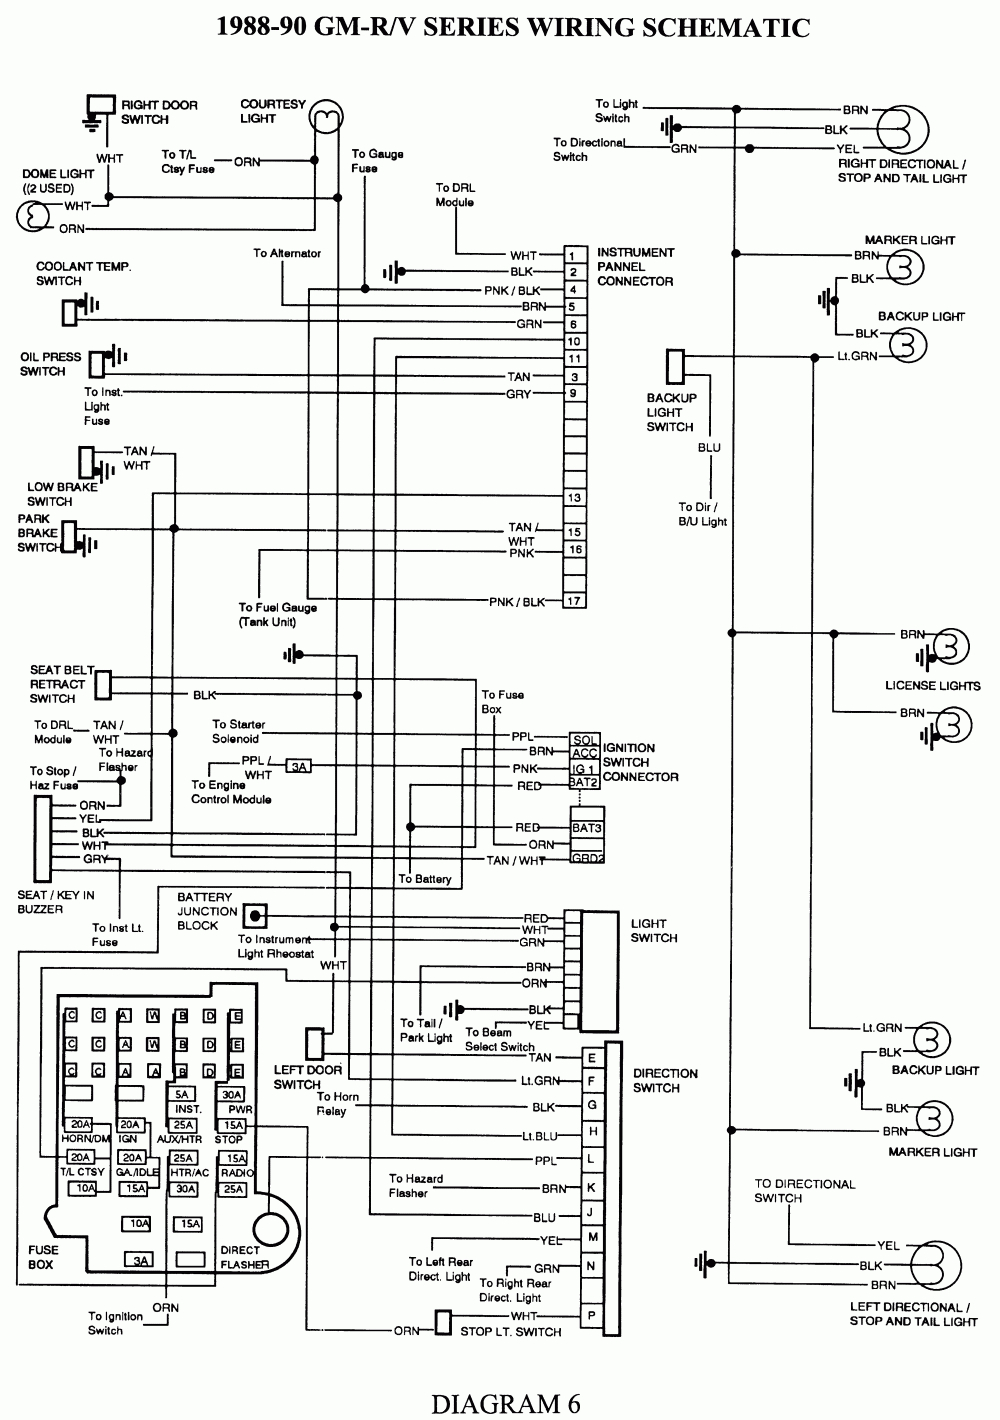 Repair Guides | Wiring Diagrams | Wiring Diagrams | Autozone - 1995 Chevy Silverado Wiring Diagram